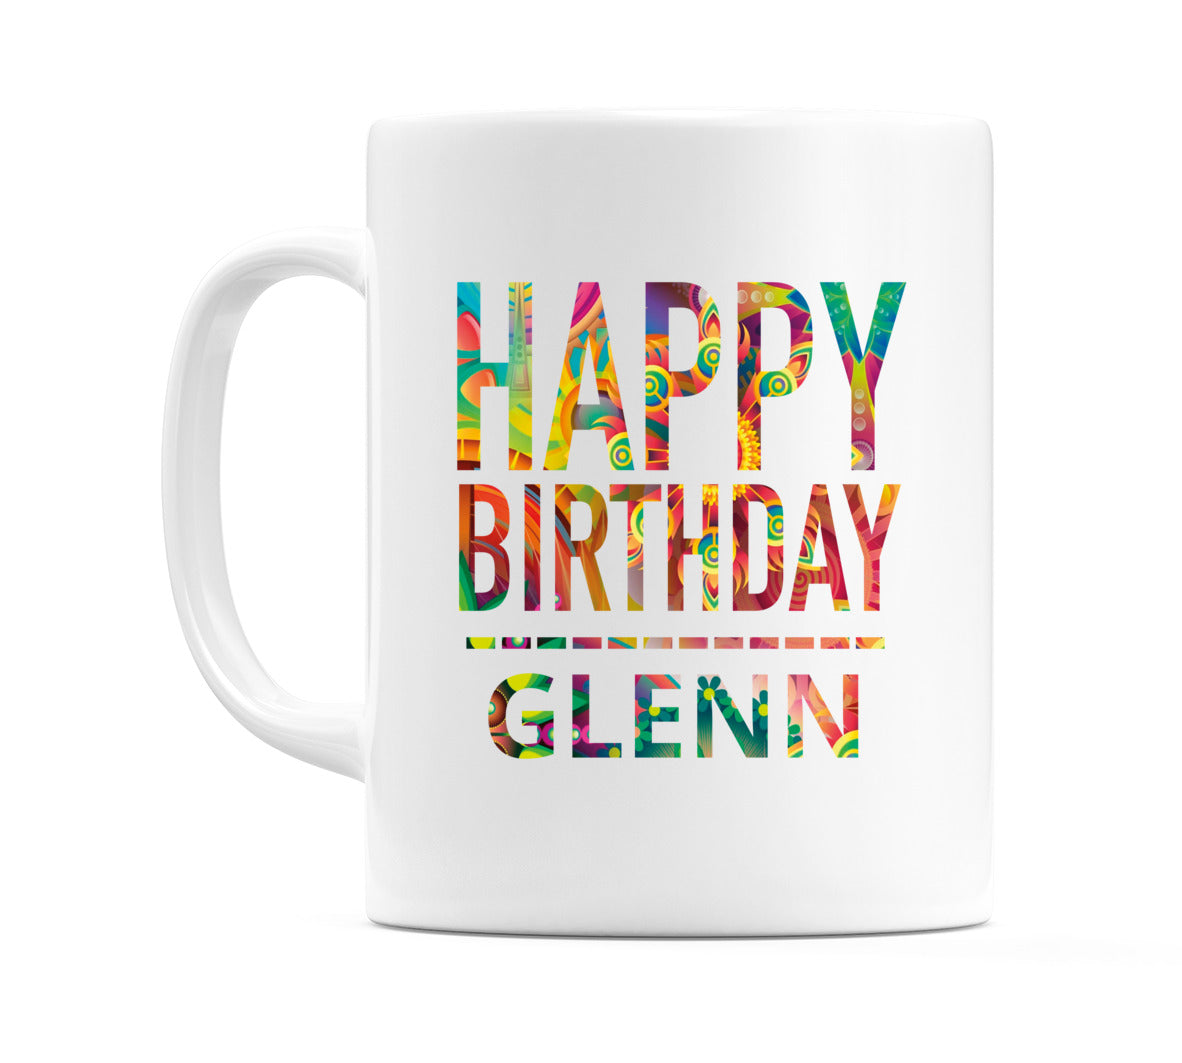 Happy Birthday Glenn (Tie Dye Effect) Mug Cup by WeDoMugs